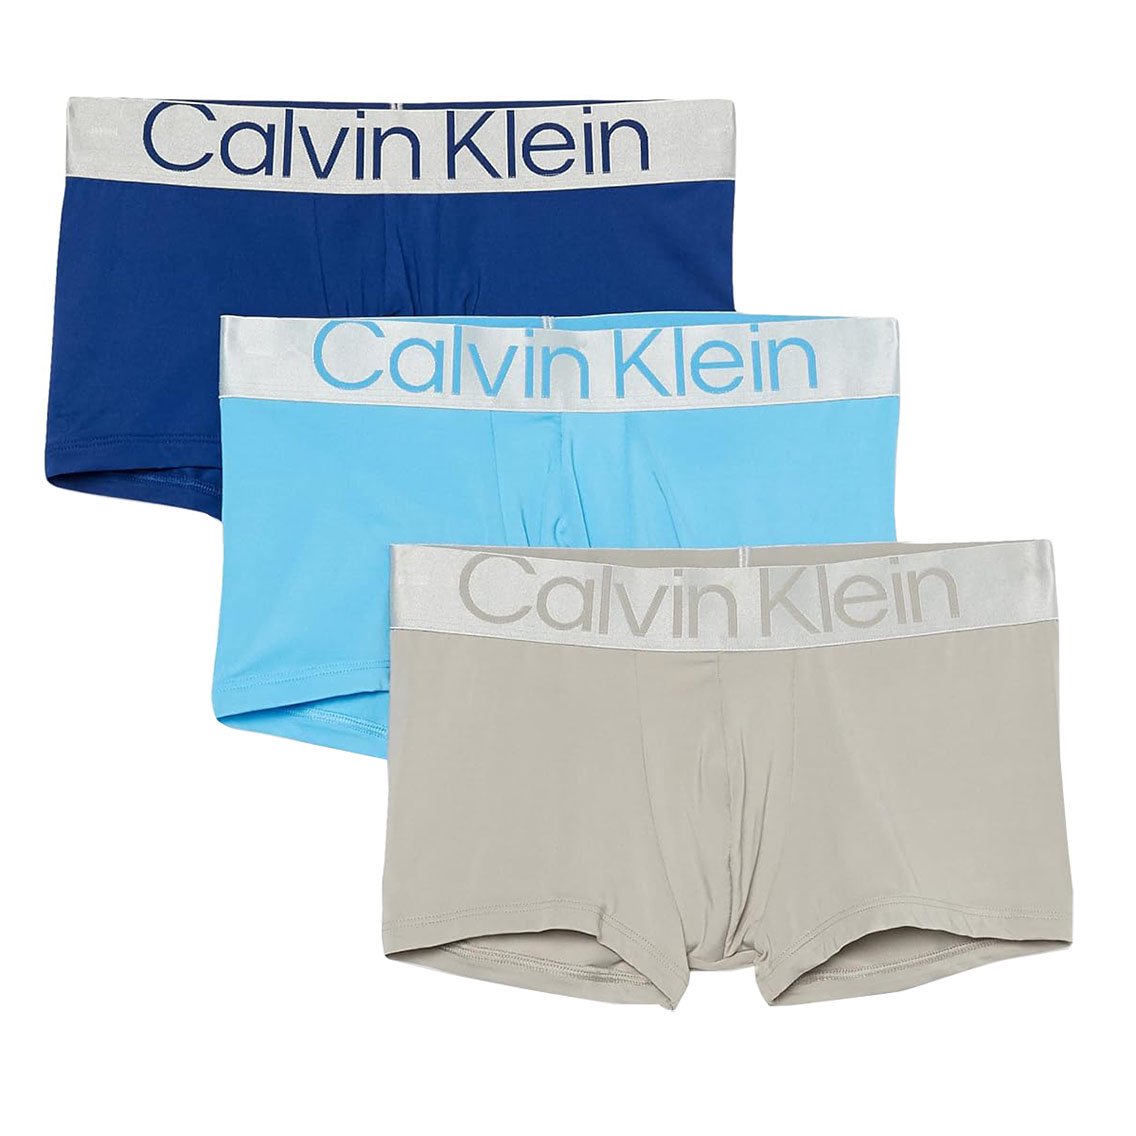 Calvin Klein(カルバンクライン)[NB3074-913]:ボクサーパンツ,男性下着 